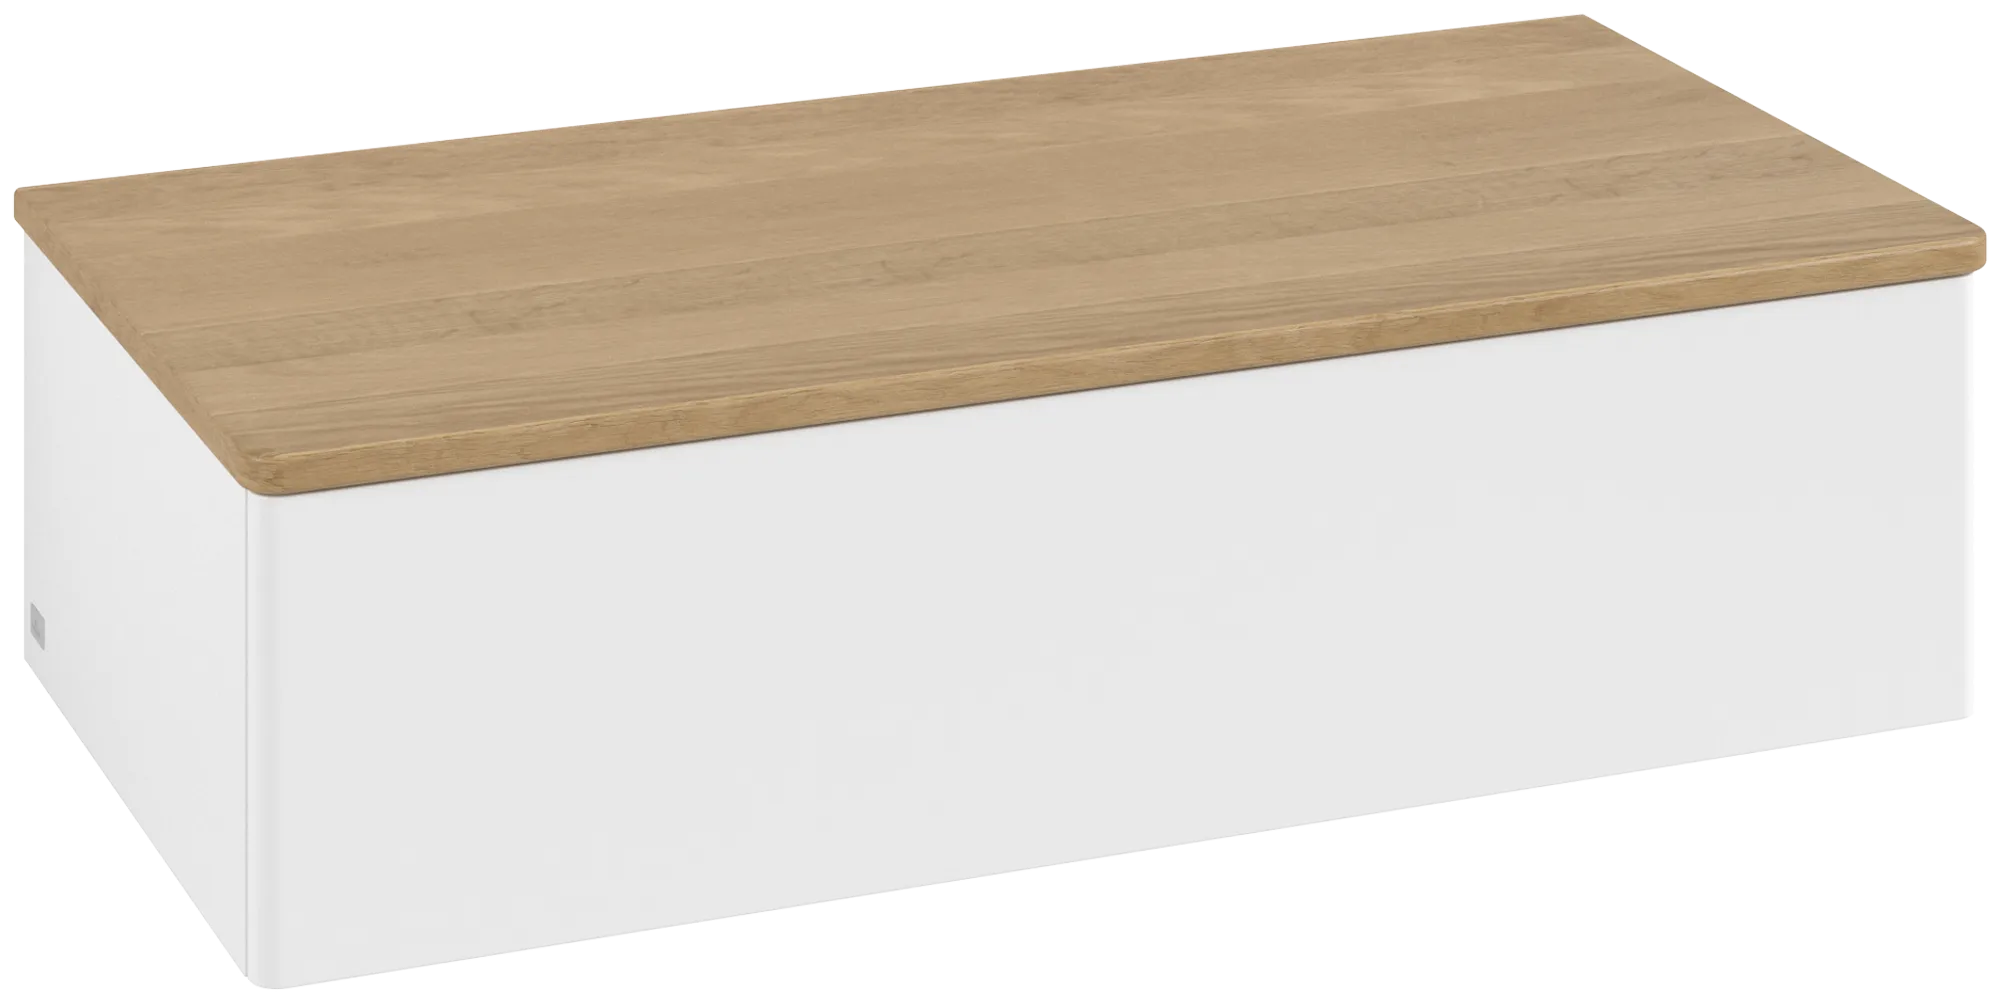 Bild von VILLEROY BOCH Antao Sideboard, mit Beleuchtung, 1 Auszug, 1000 x 268 x 500 mm, Front ohne Struktur, White Matt Lacquer / Honey Oak #L40001MT